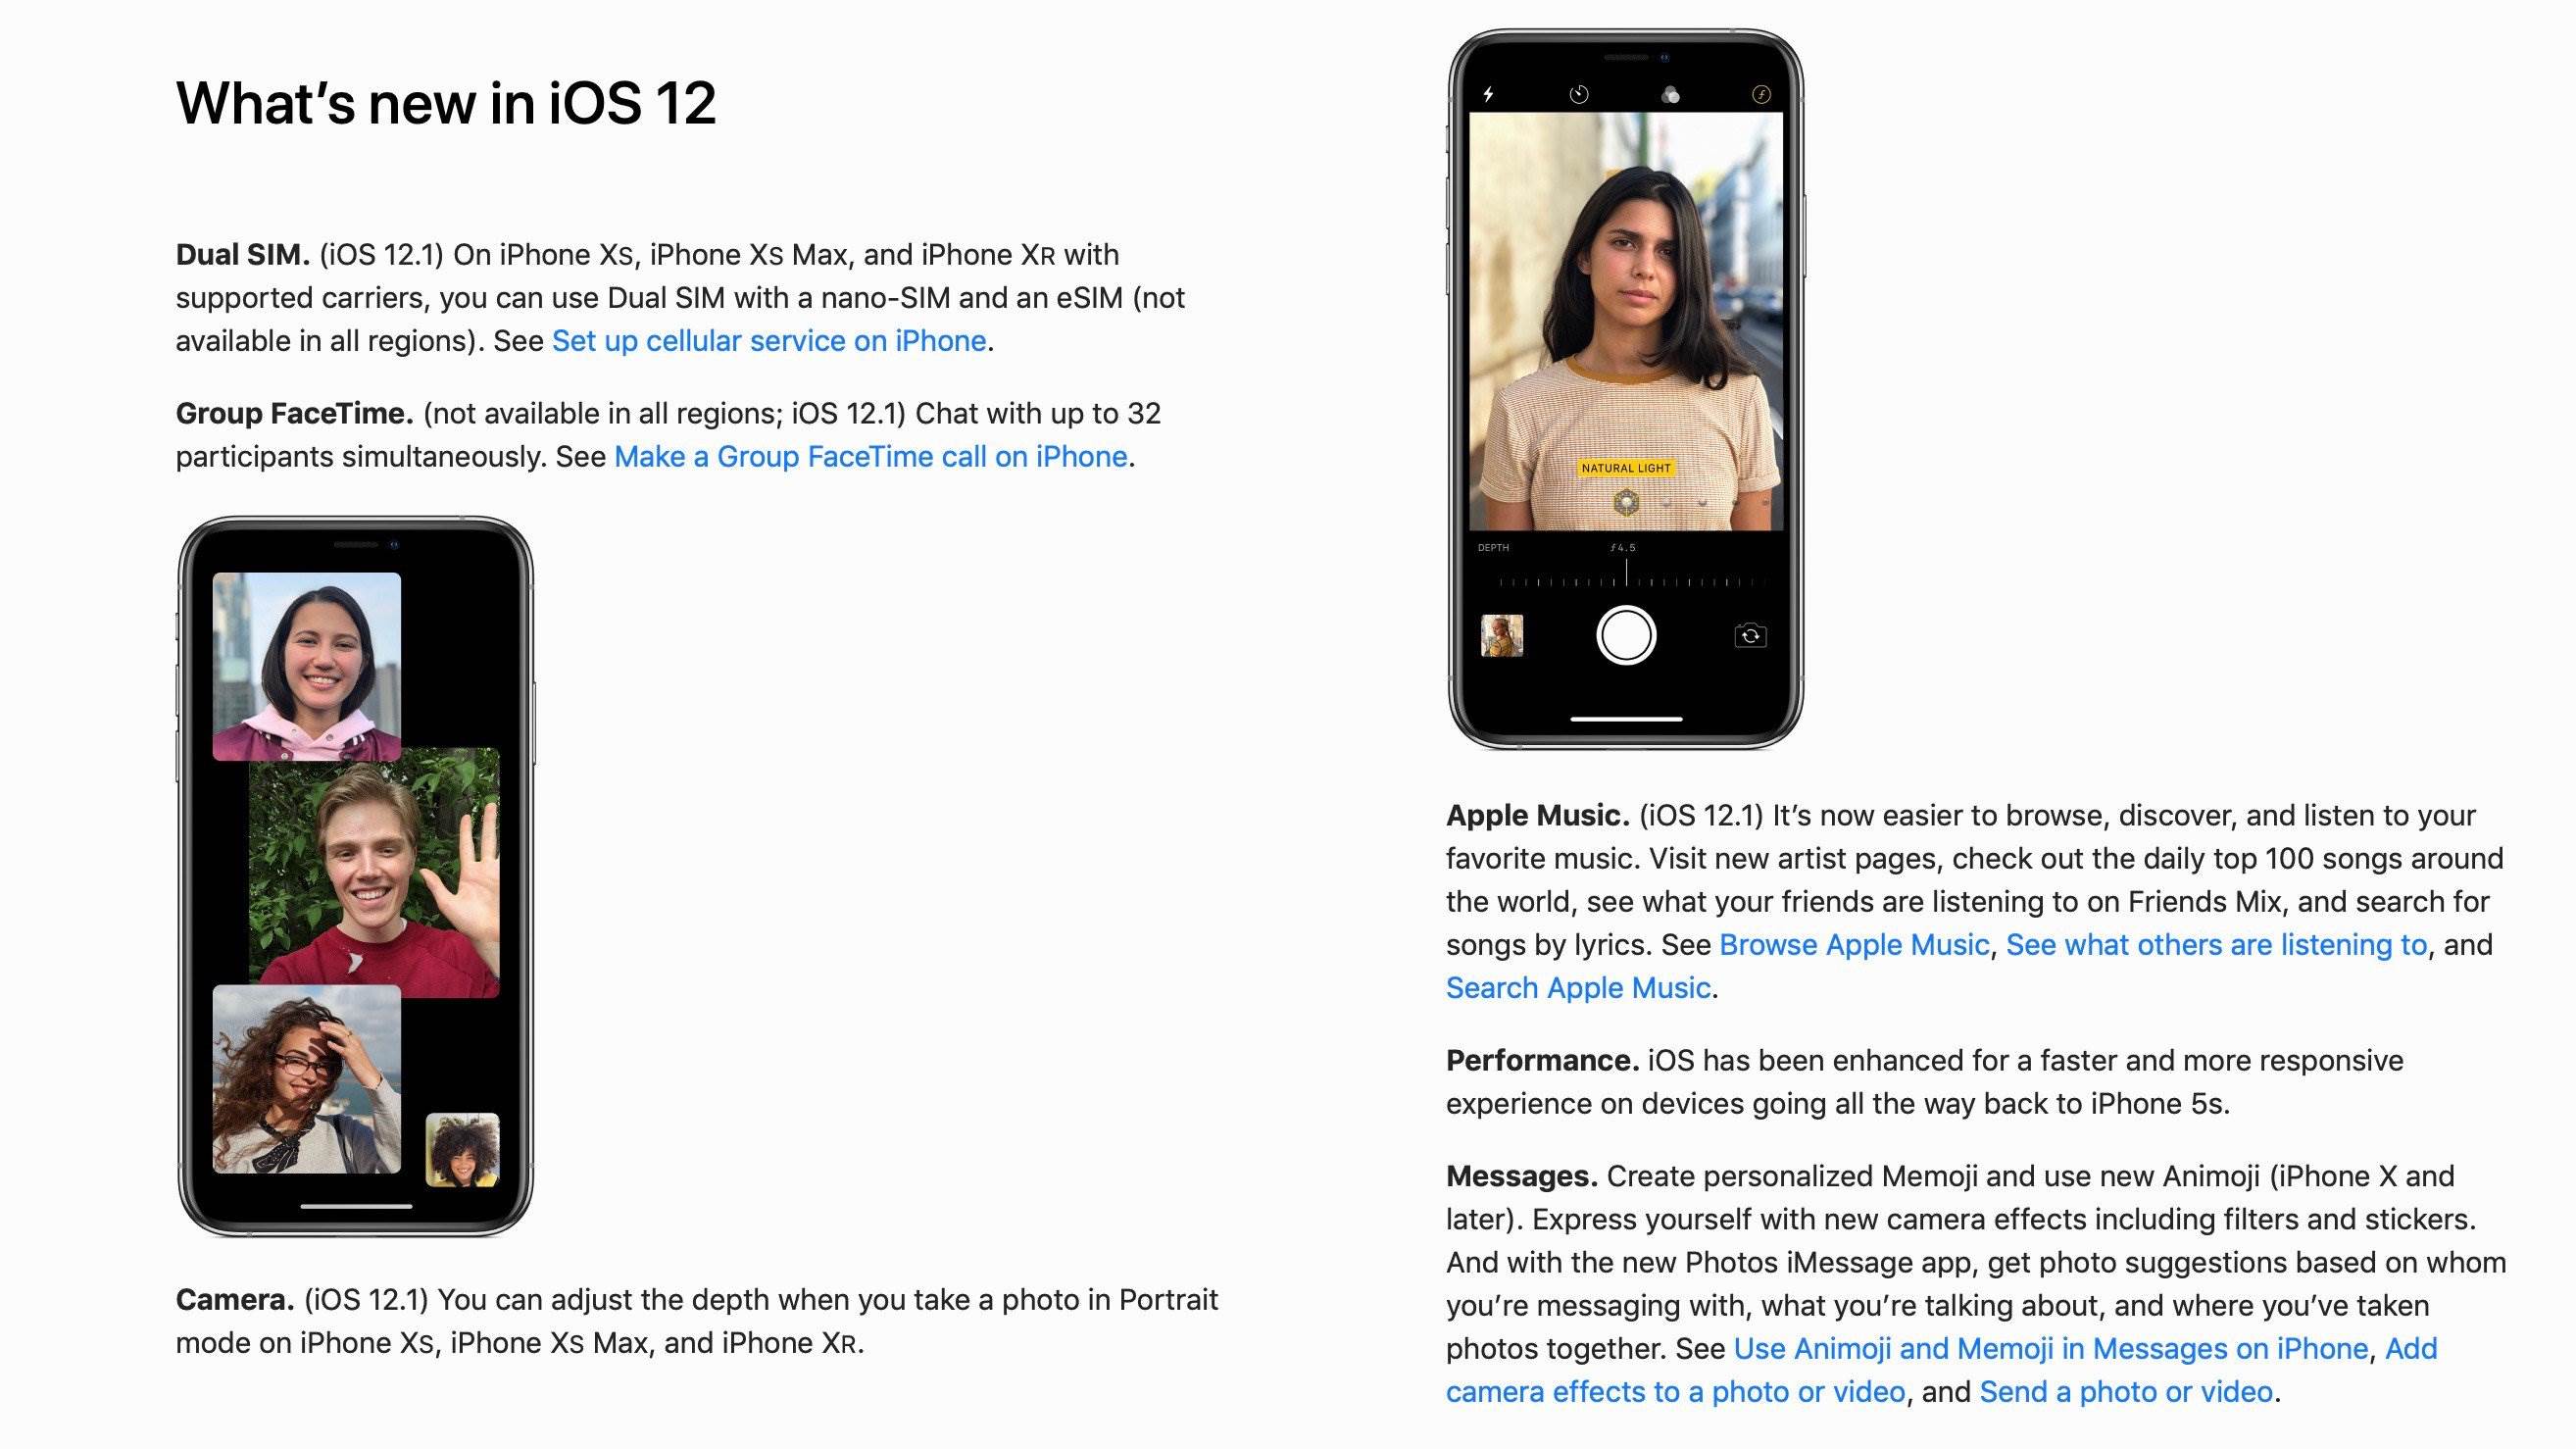 iOS 12.1 - trzy nowe funkcje oficjalnie potwierdzone przez Apple polecane, ciekawostki premiera iOS 12.1, nowości w iOS 12.1, kiedy iOS 12.1, iOS 12.1, iOS, co nowego w iOS 12.1, Apple  Premiera iOS 12.1 zbliża się wielkimi krokami. Najprawdopodobniej kolejna wersja iOS zostanie udostępniona już na początku przyszłego tygodnia. Co nowego zobaczymy w iOS 12.1? iOS12.1 poradnik